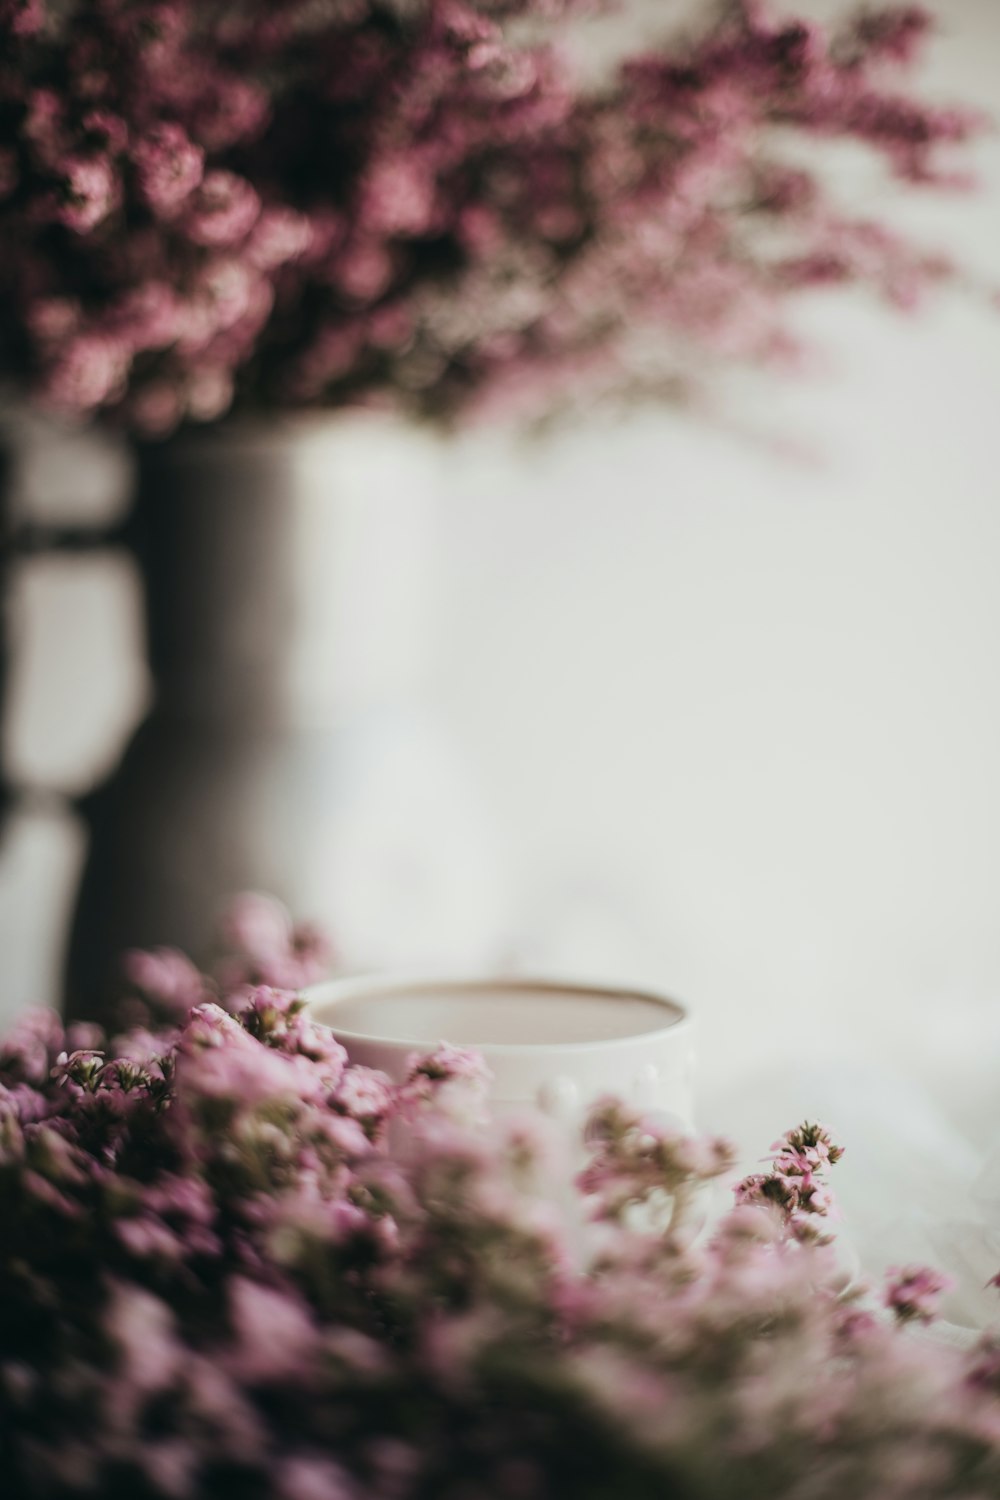 fleurs violettes à côté de la tasse en céramique blanche